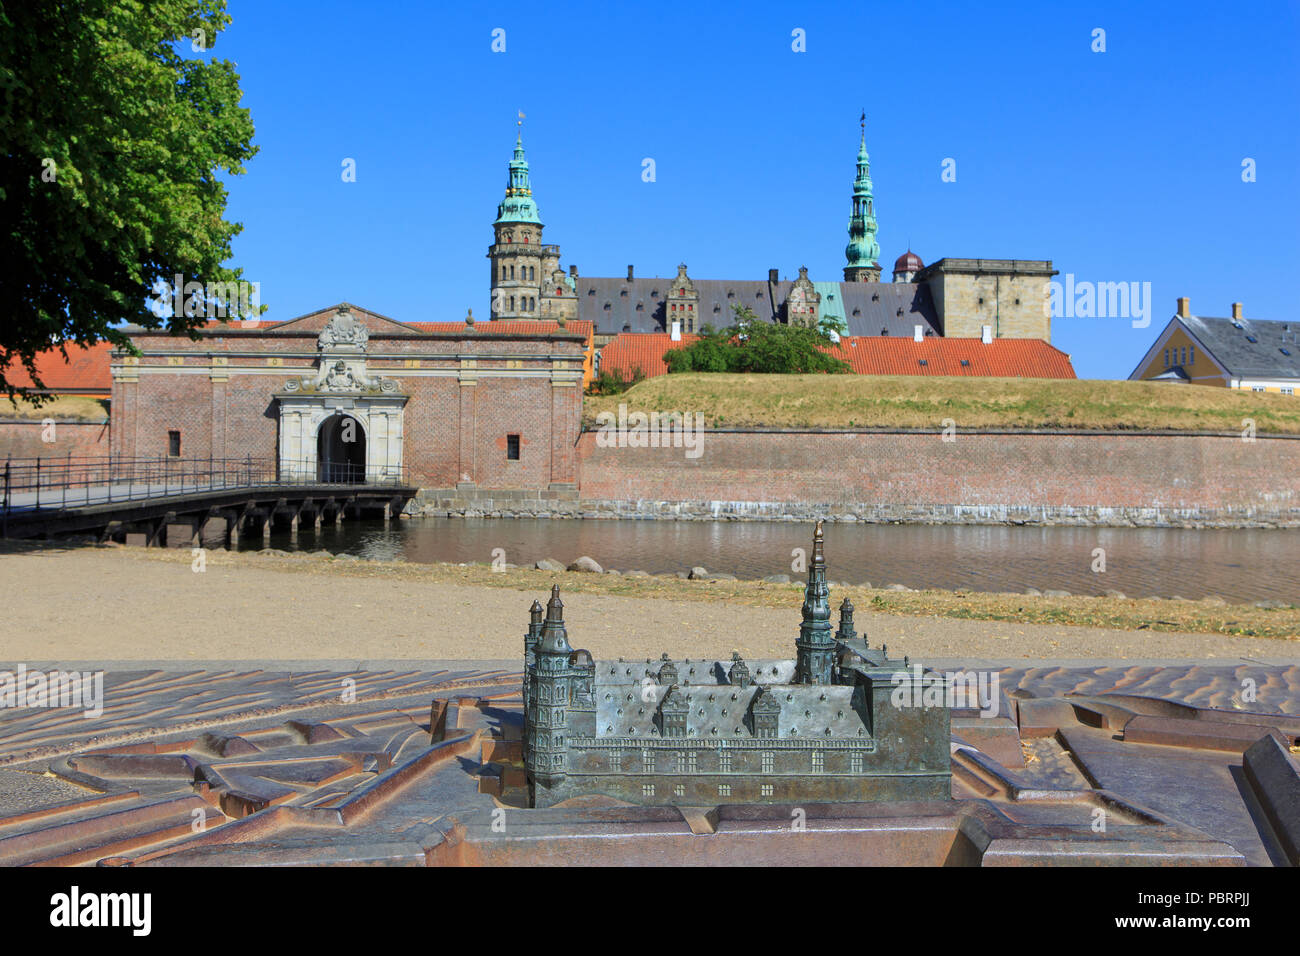 Un modèle à l'échelle de Château de Kronborg (Site du patrimoine mondial de l'UNESCO depuis 2000), le Danemark à Helsingor Banque D'Images